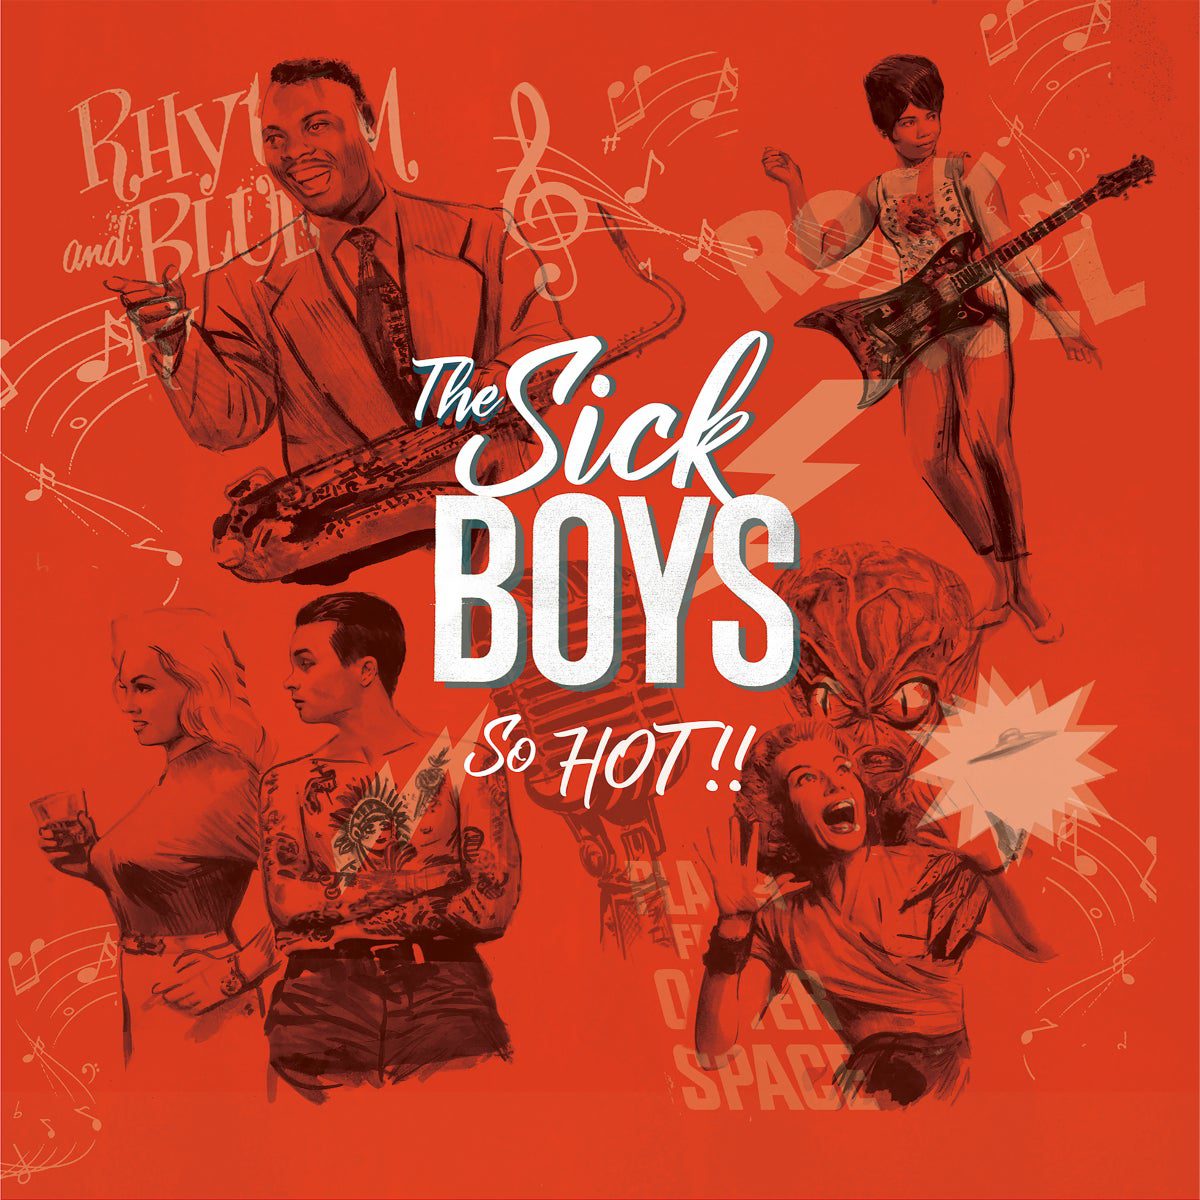 THE SICK BOYS – SO HOT!